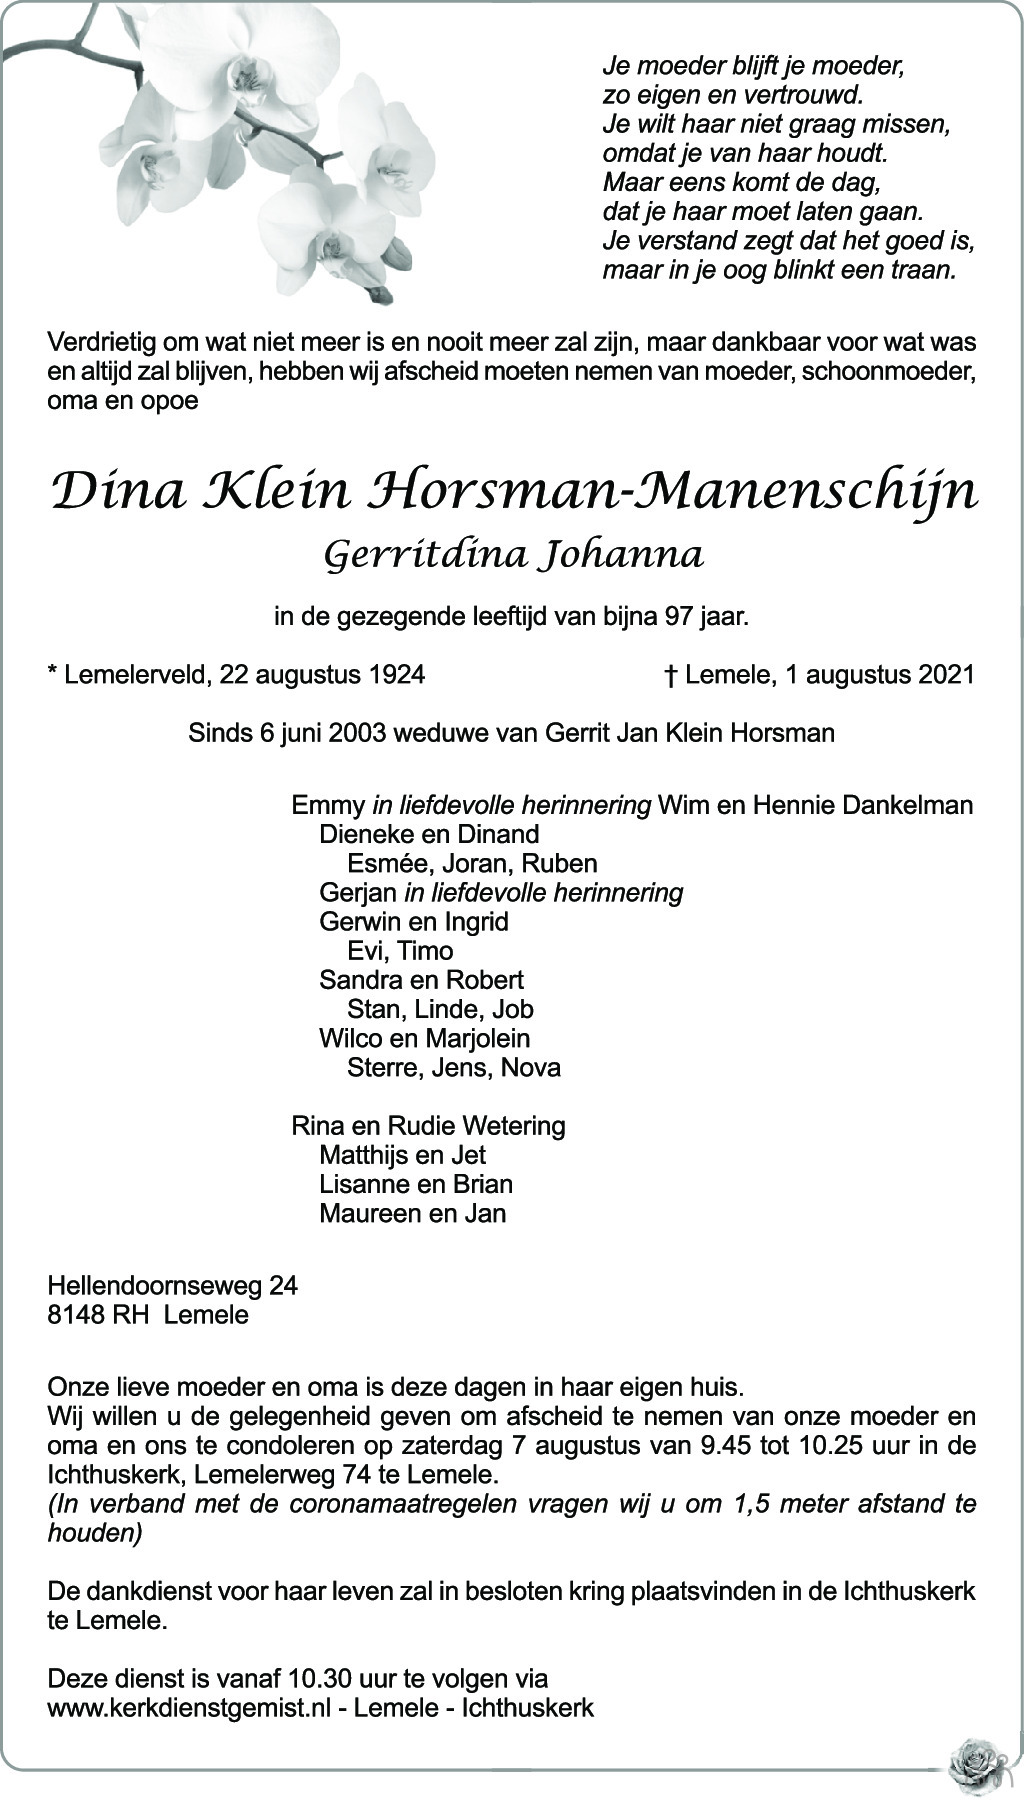 Overlijdensbericht van Dina (Gerritdina Johanna) Klein Horsman-Maneschijn in de Stentor